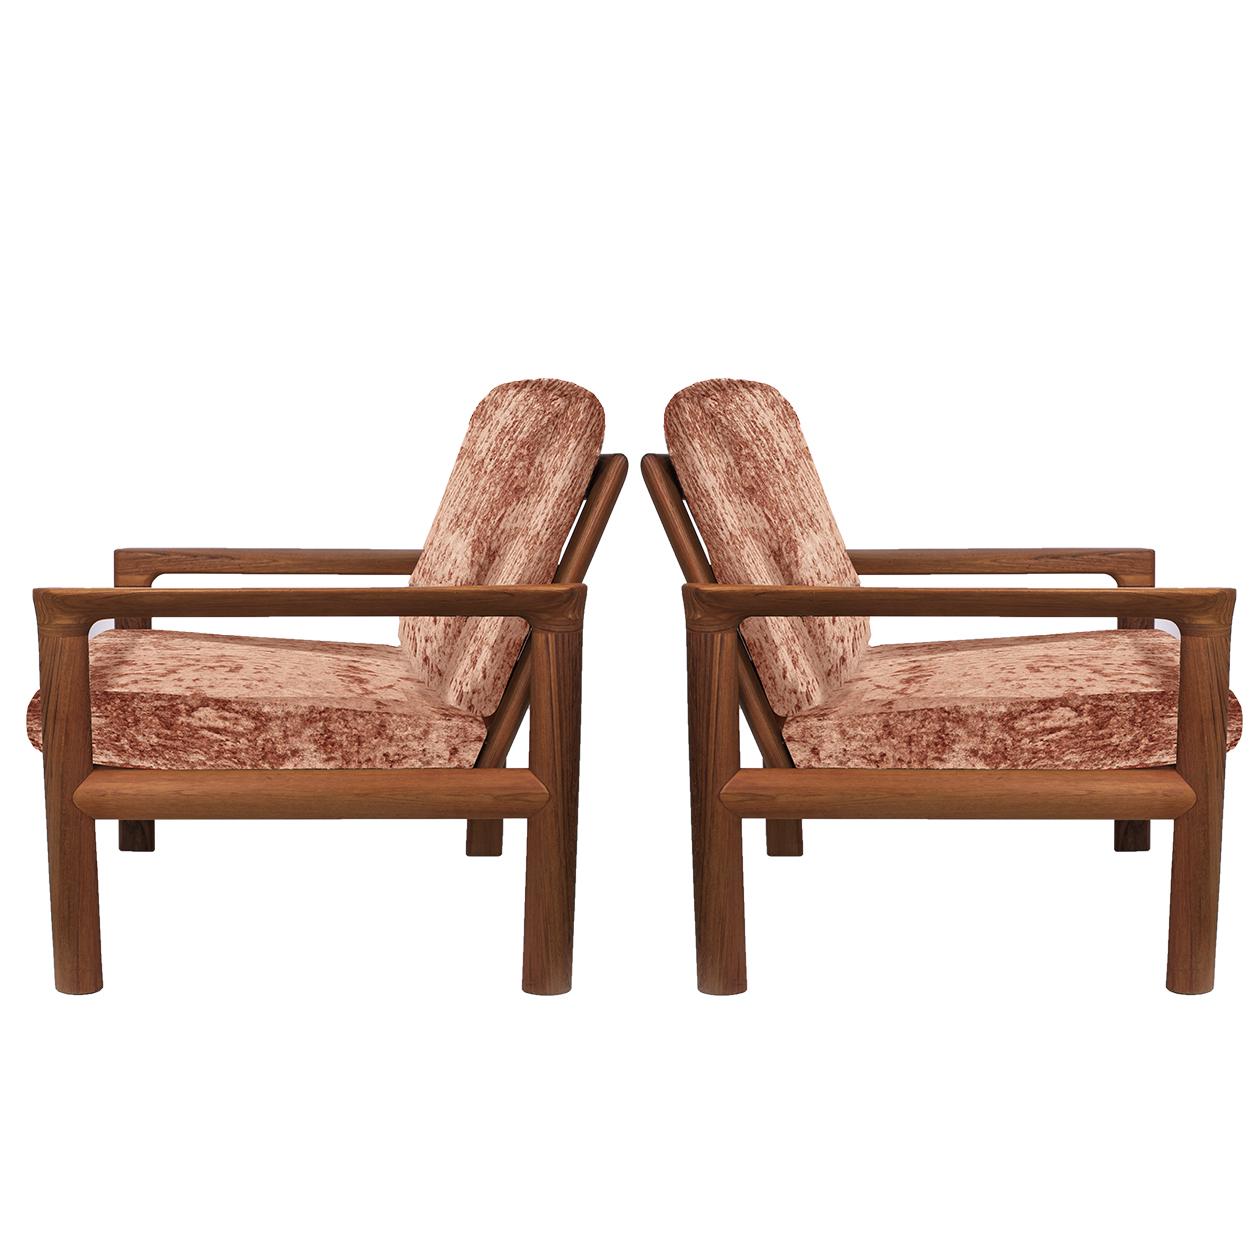 Mid-Century Modern Pair of New Velvet Upholstered Sculptural Easy Chairs by Sven Ellekaer, 1960s For Sale